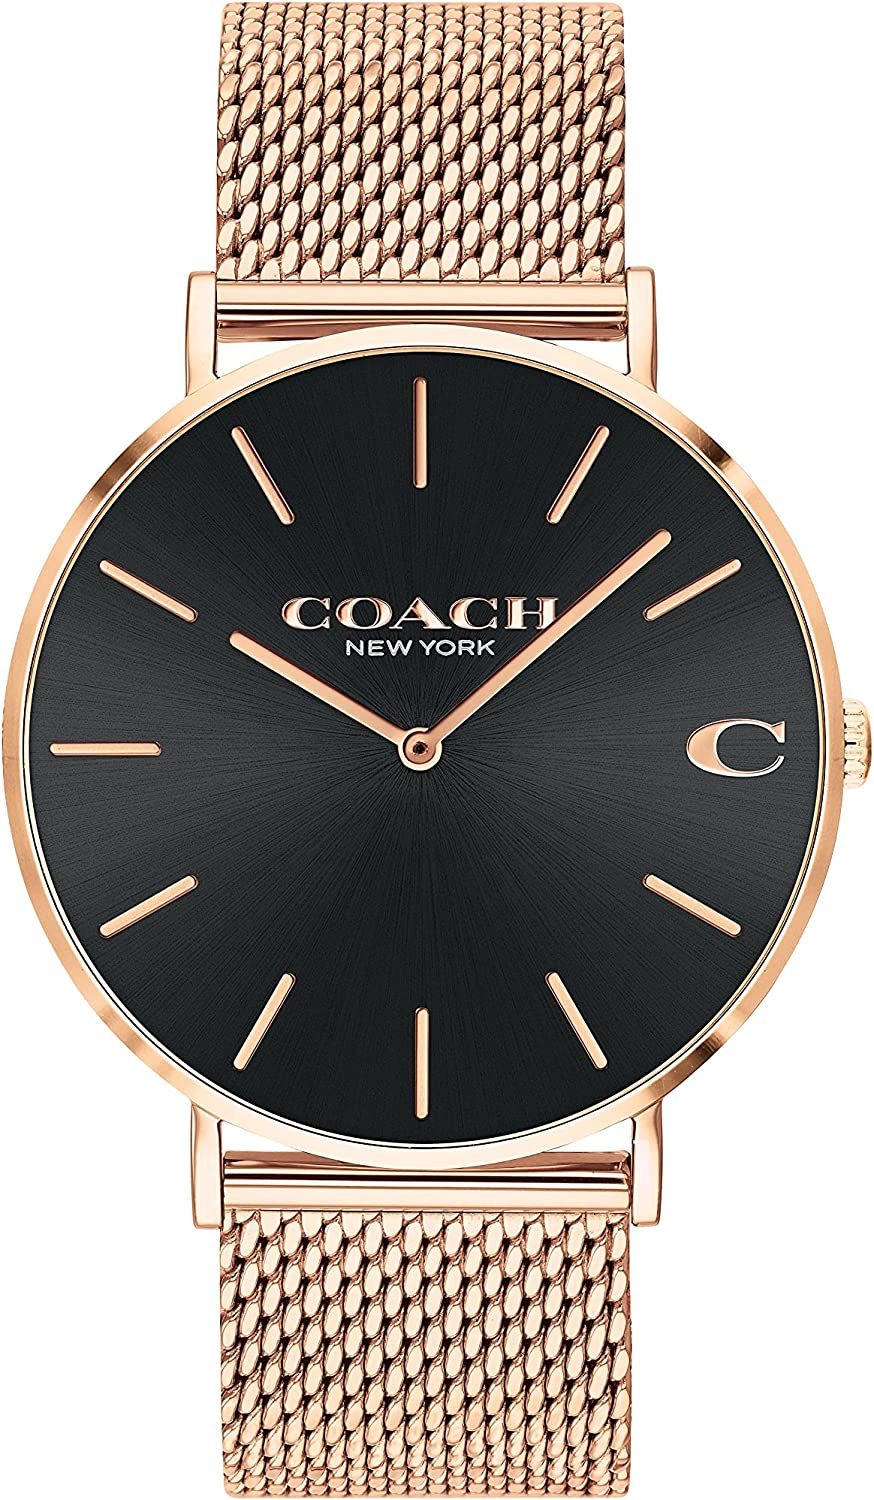 腕時計 メンズ コーチ チャールズ ブラック ゴールド 14602552 COACH CHARLES 時計 ウオッチ